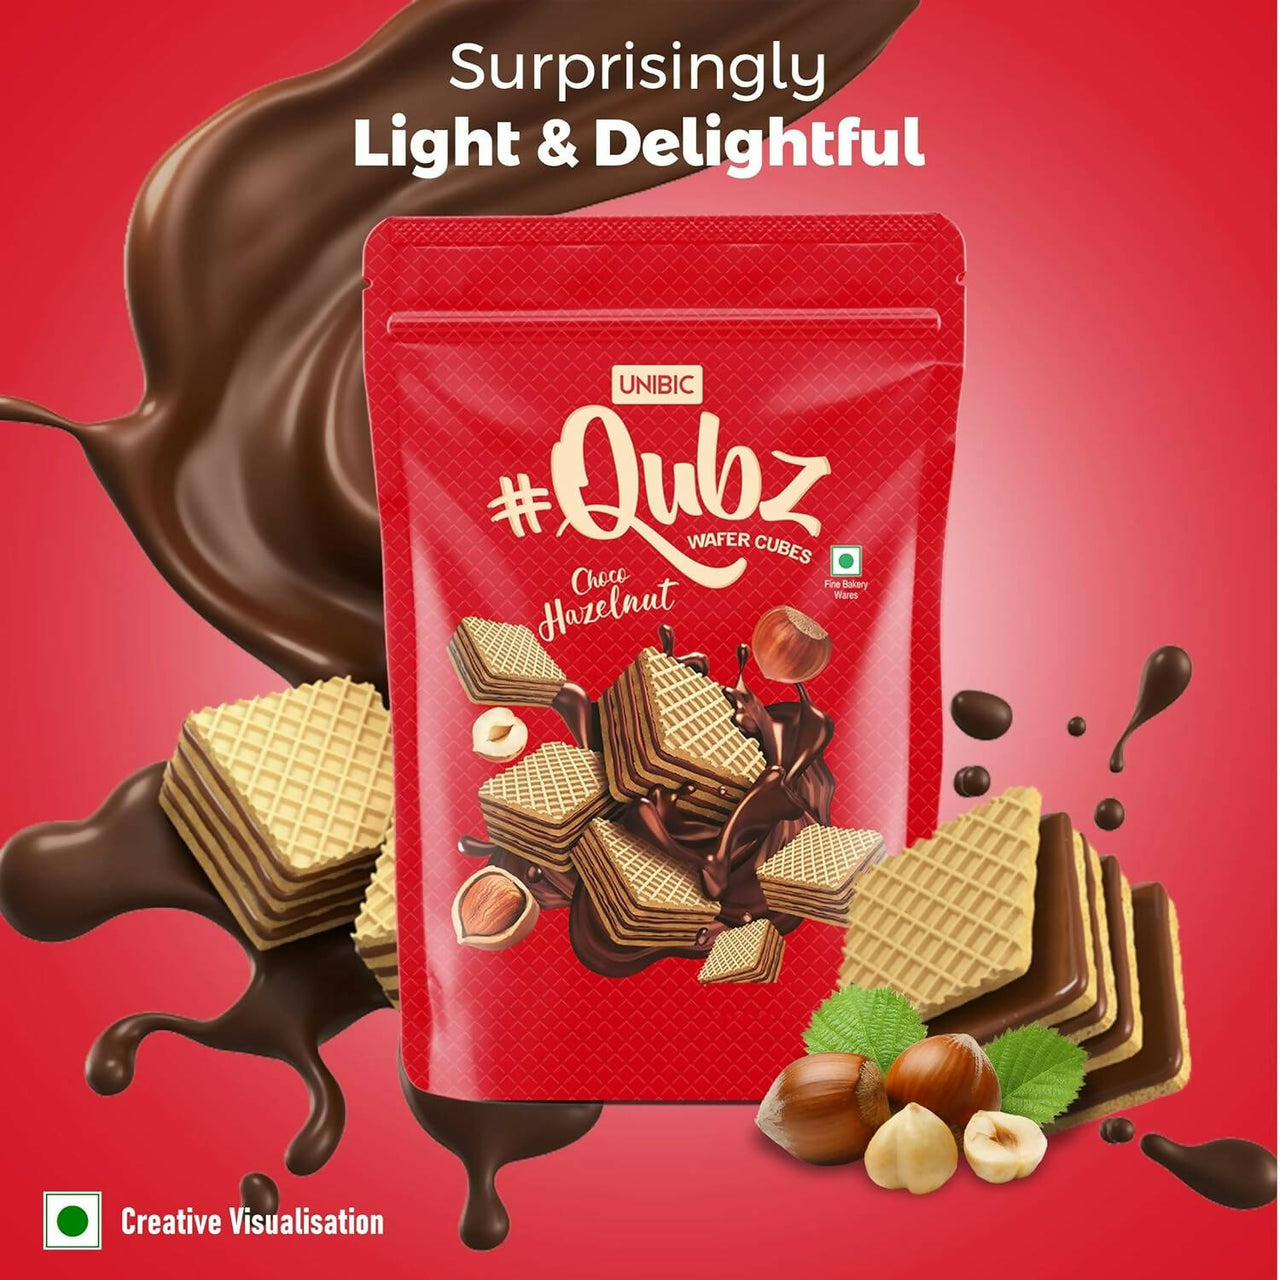 Unibic Qubz Wafer Biscuits Hazelnut Flavour - Distacart